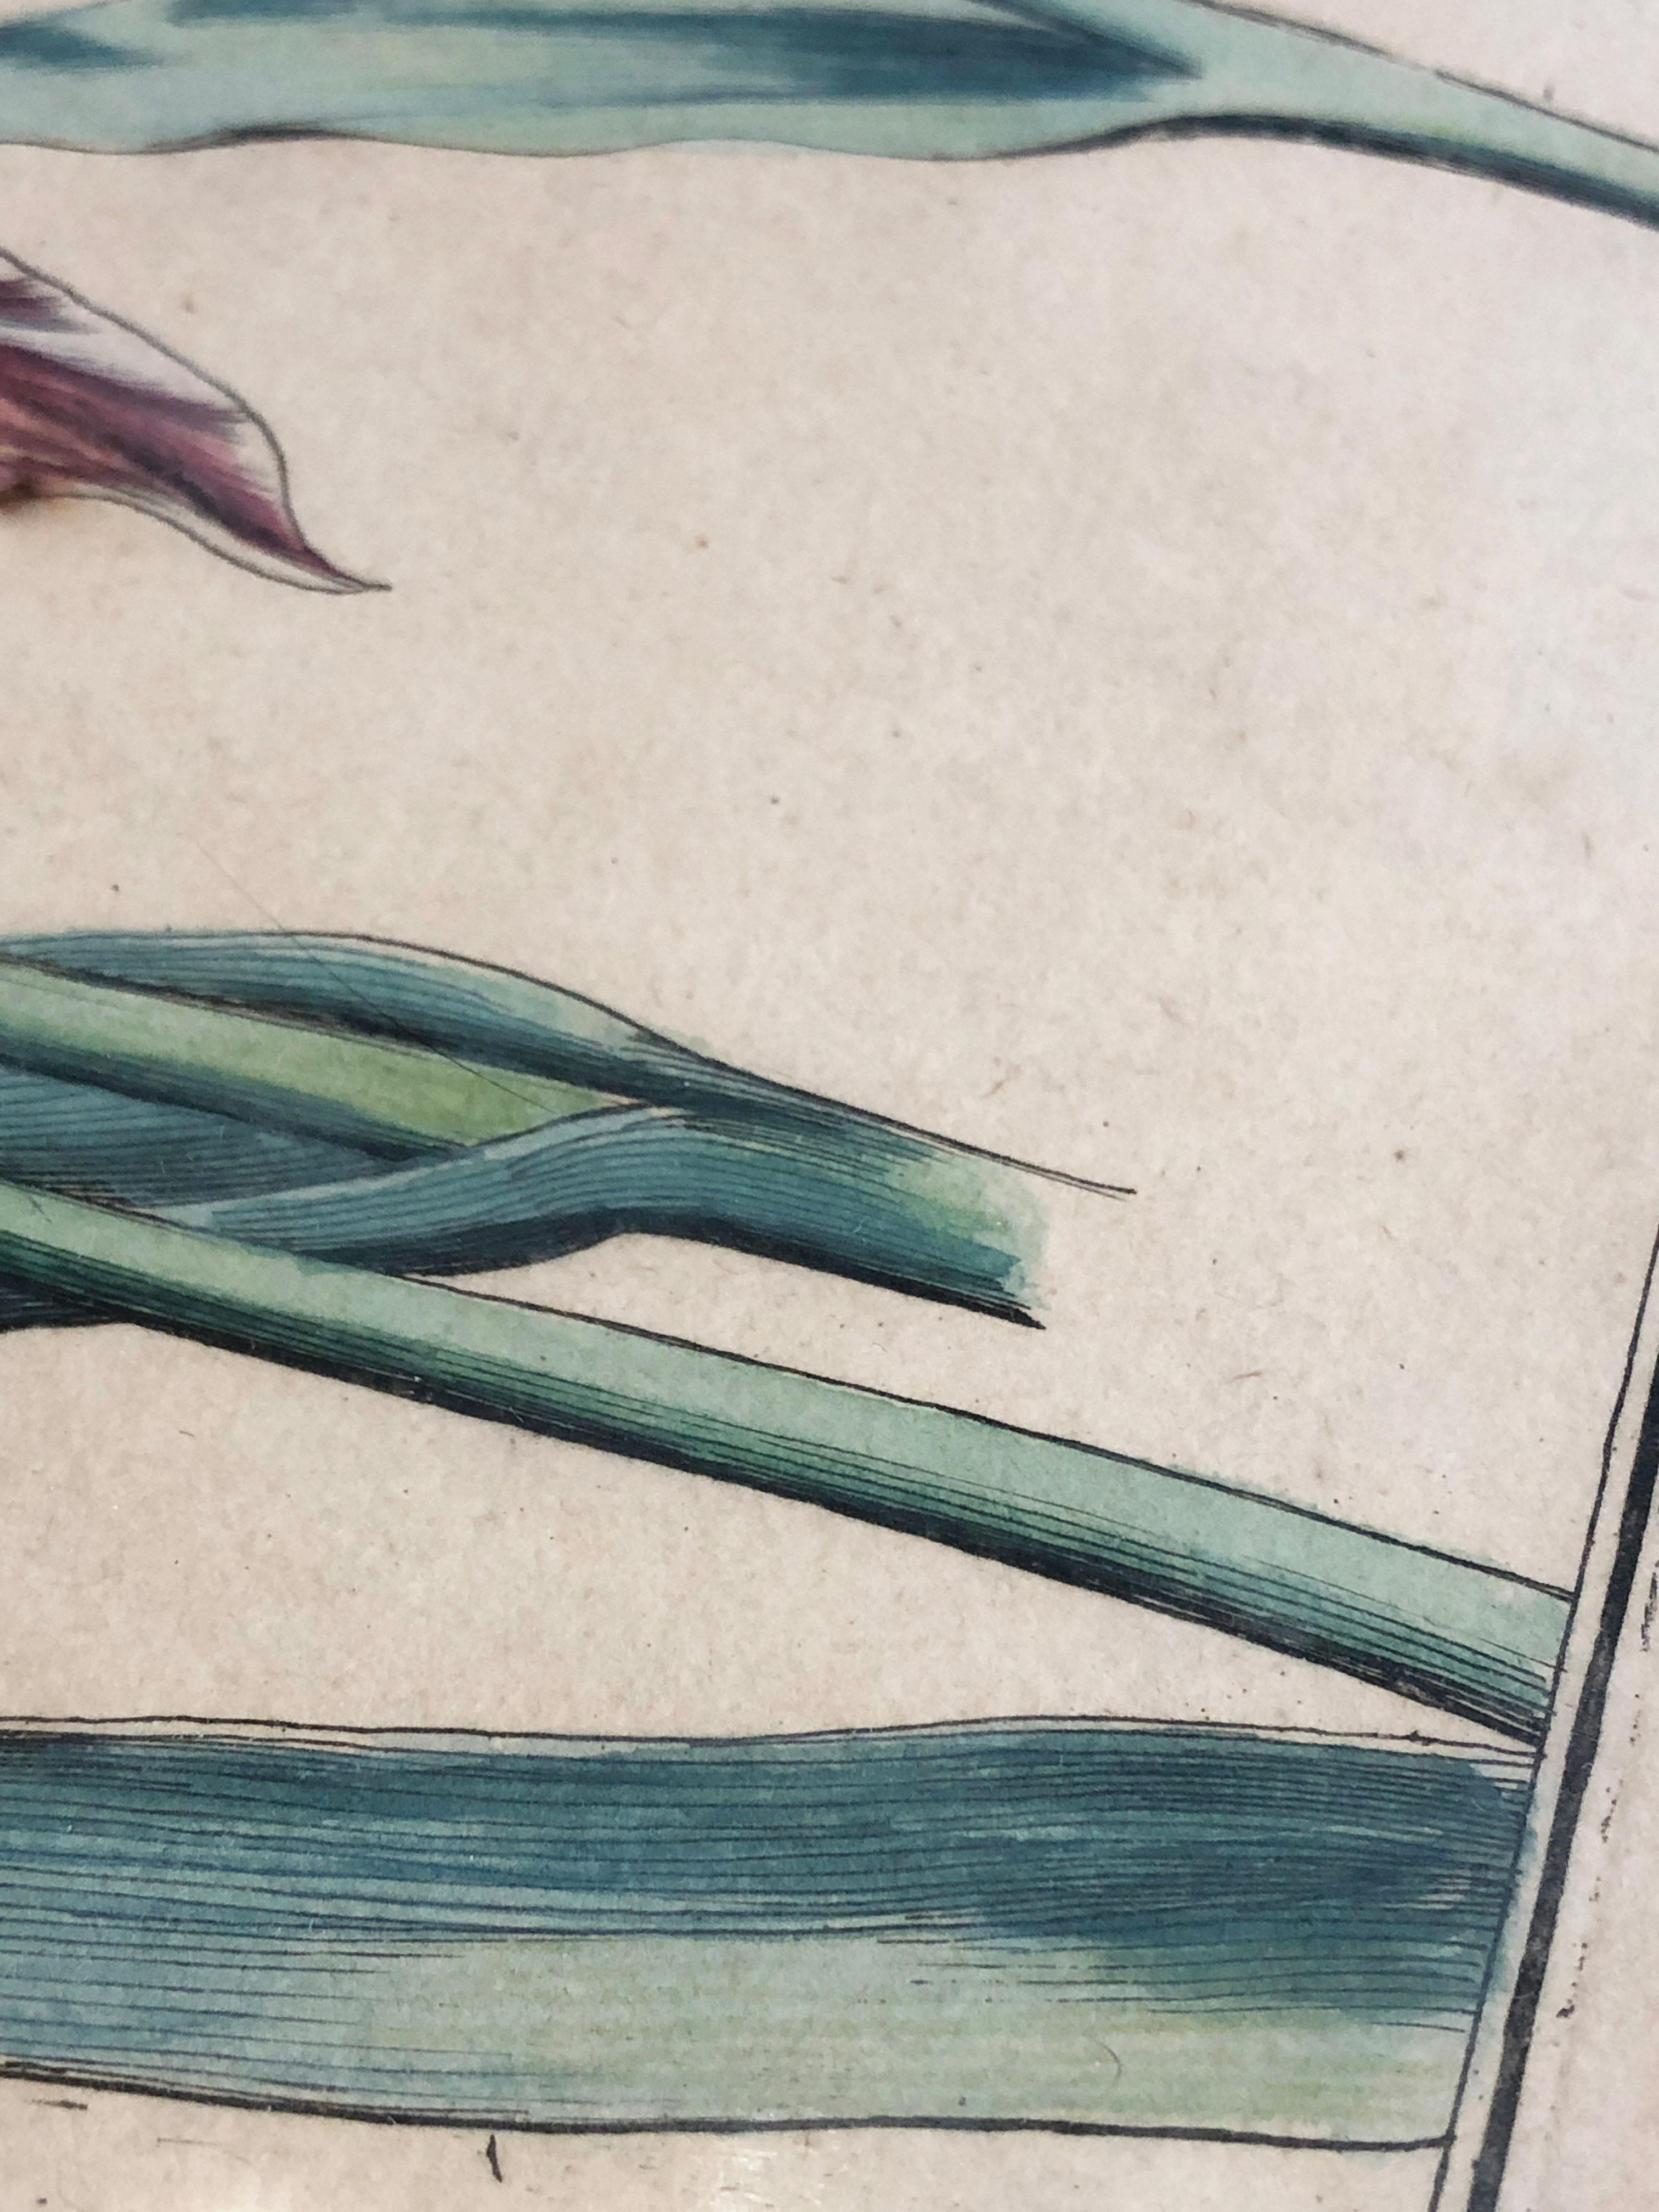 Papier Emanuel Sweert - Maria Merian - Daniel Rabel - gravure sur cuivre 4 tulipes planche 5 en vente